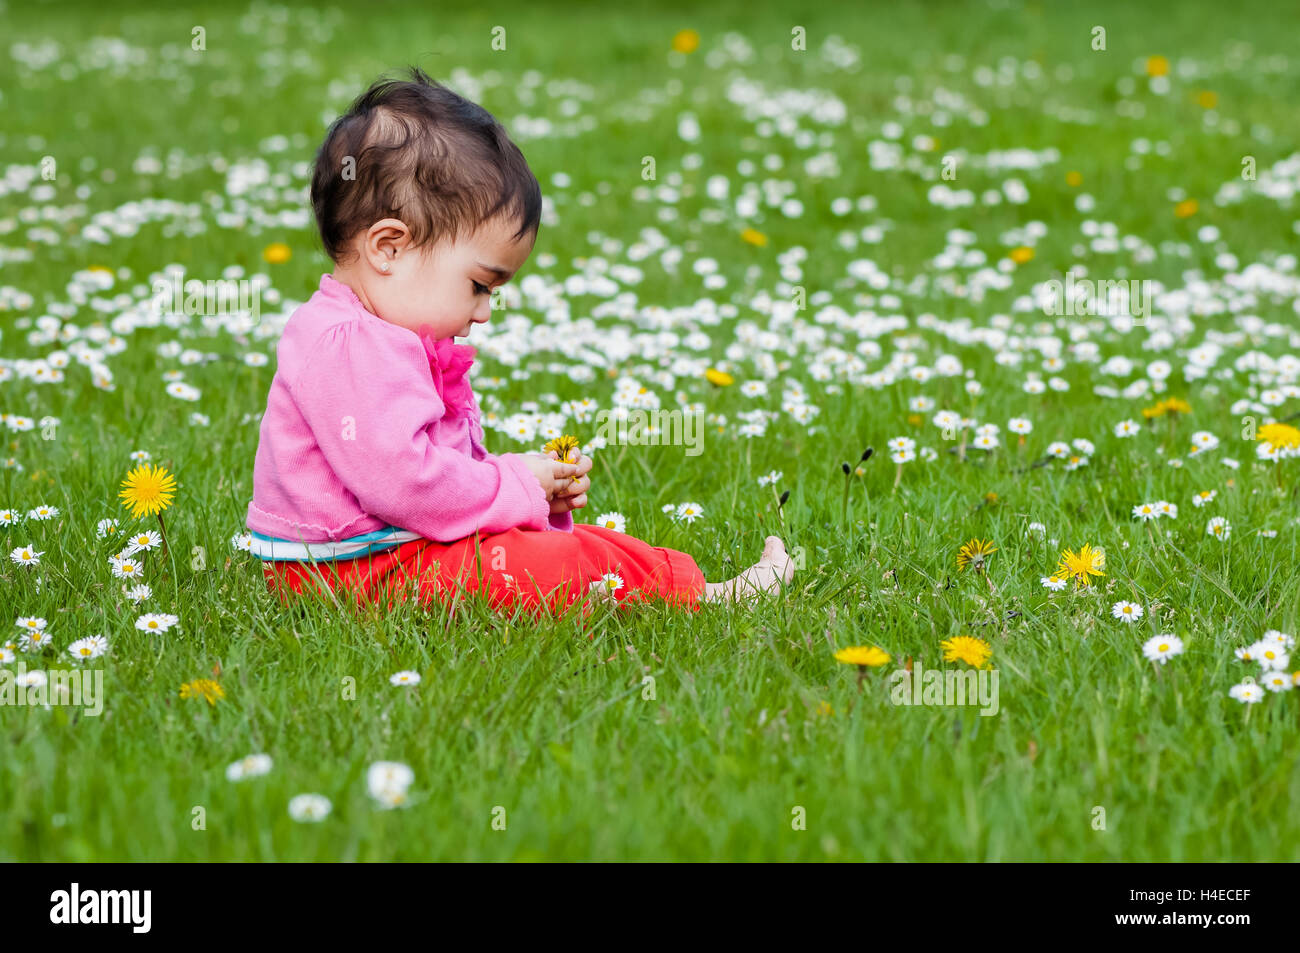 Carino chubby toddler guardando un fiore a margherita curiosamente esplorando la natura all'aperto nel parco Foto Stock